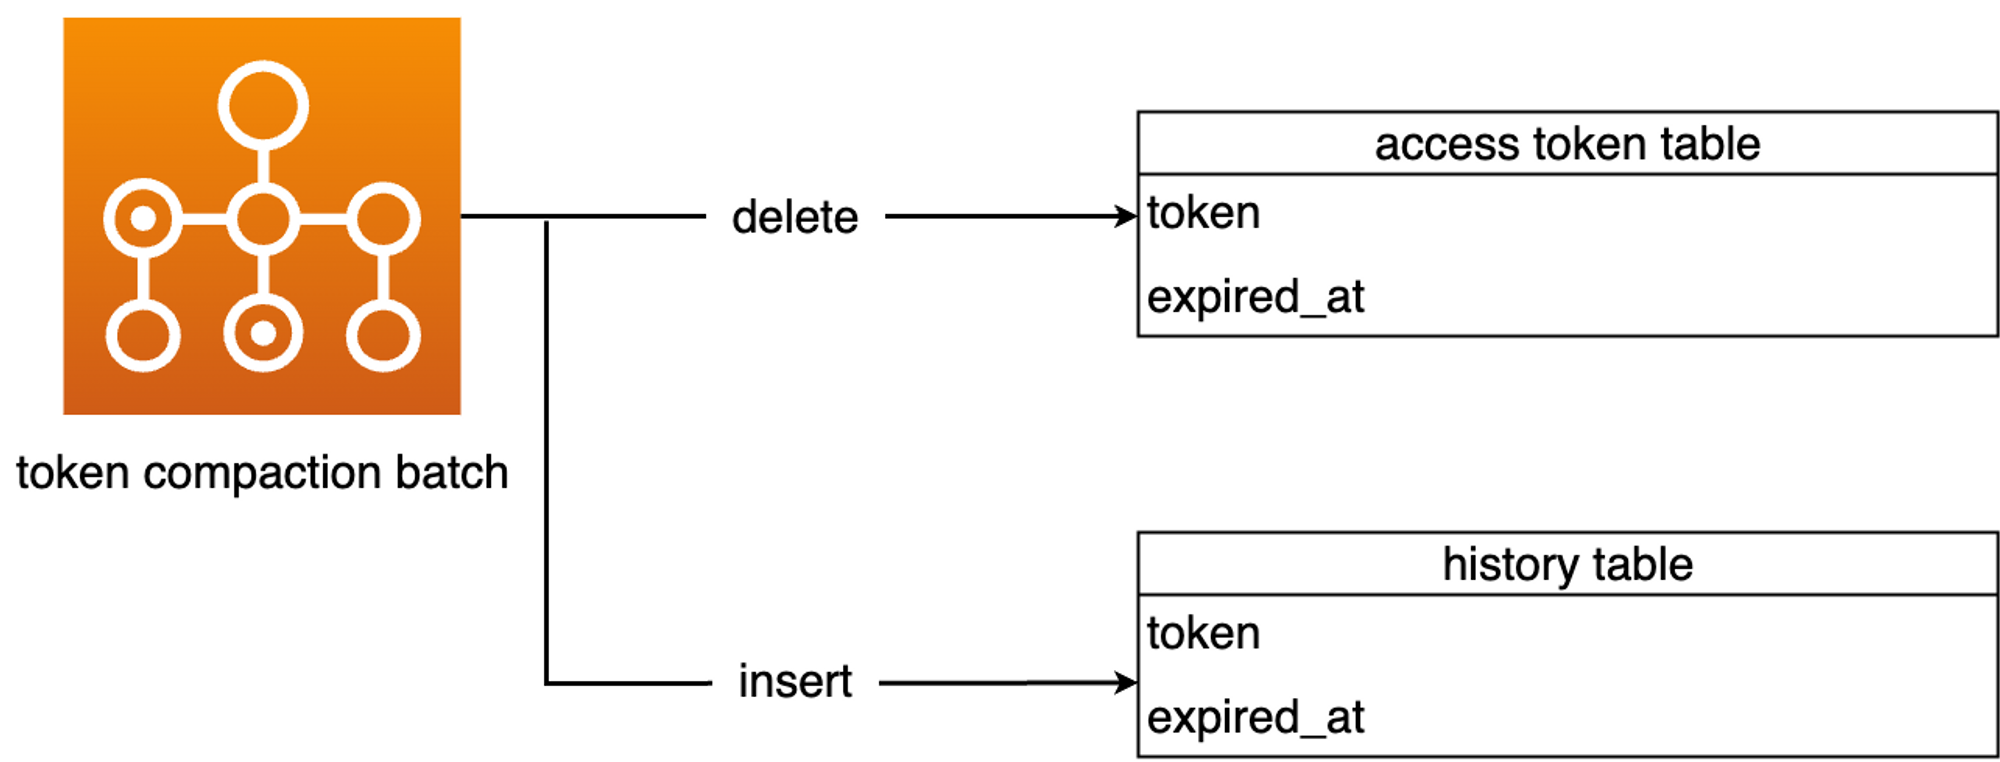 [그림] - token compaction batch architecture